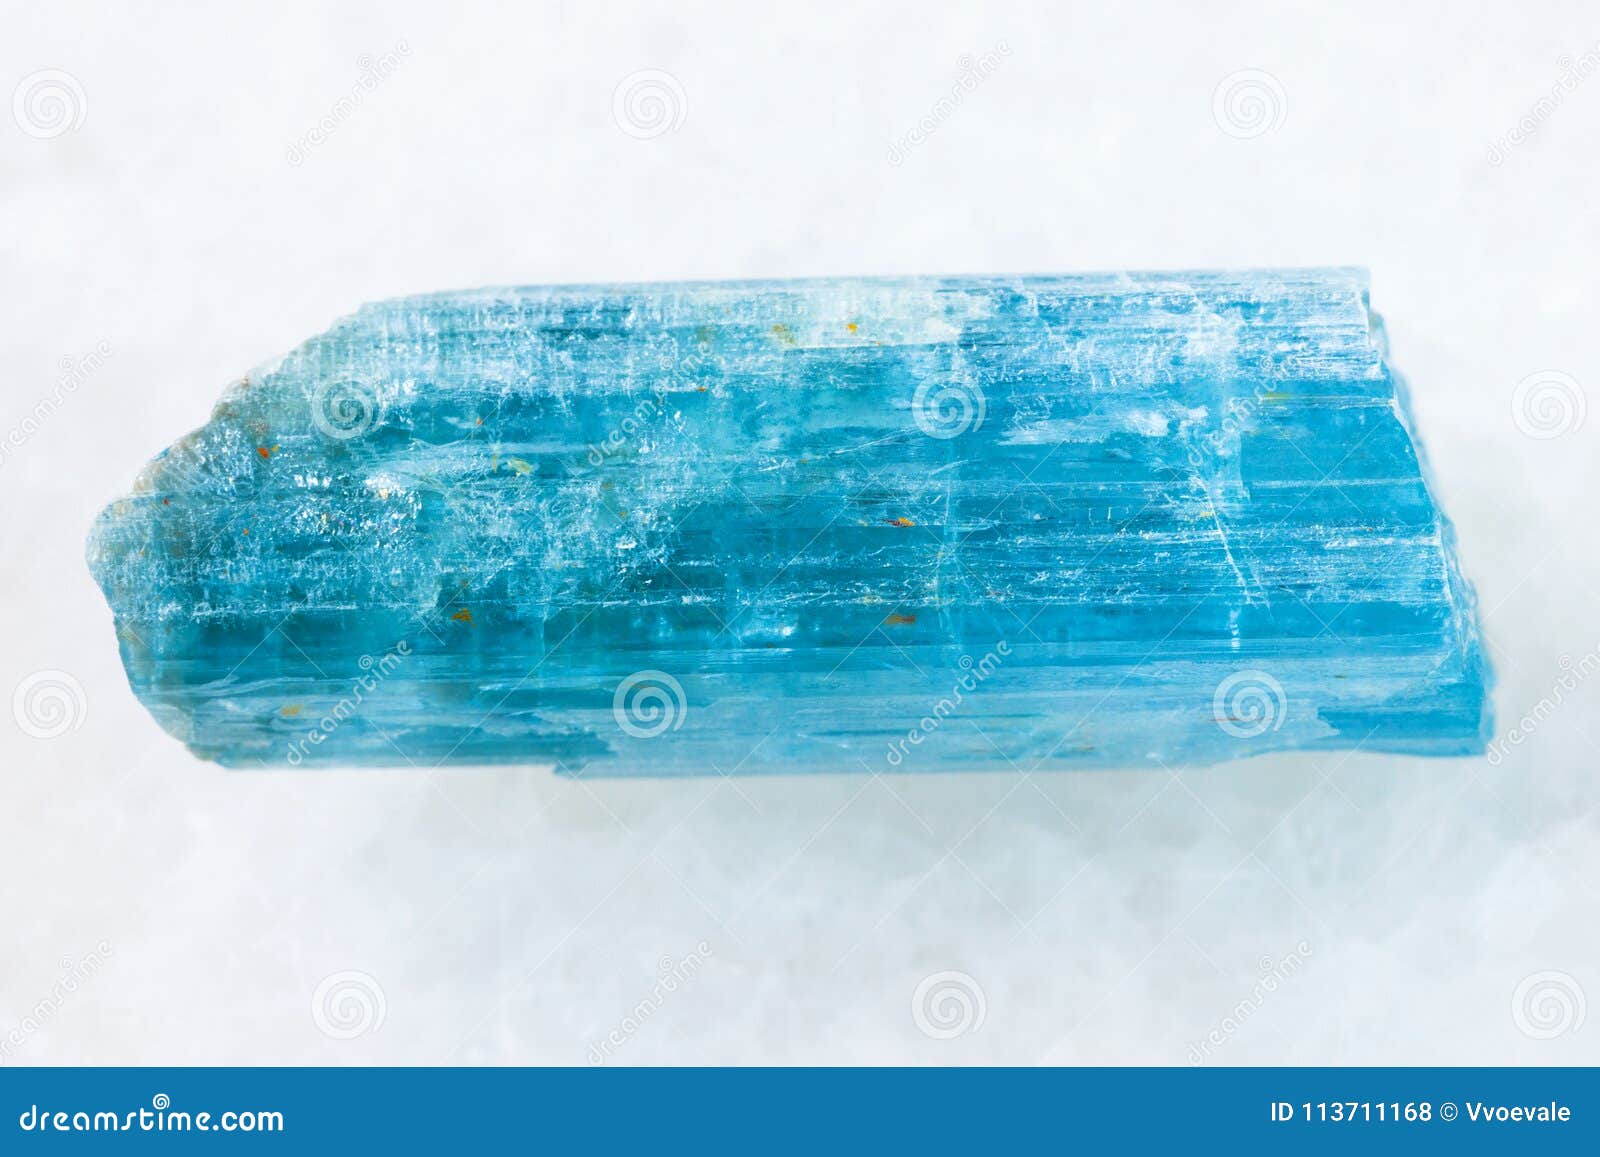 Rough Crystal of Aquamarine (blue Beryl) on White Stock Photo - Image ...